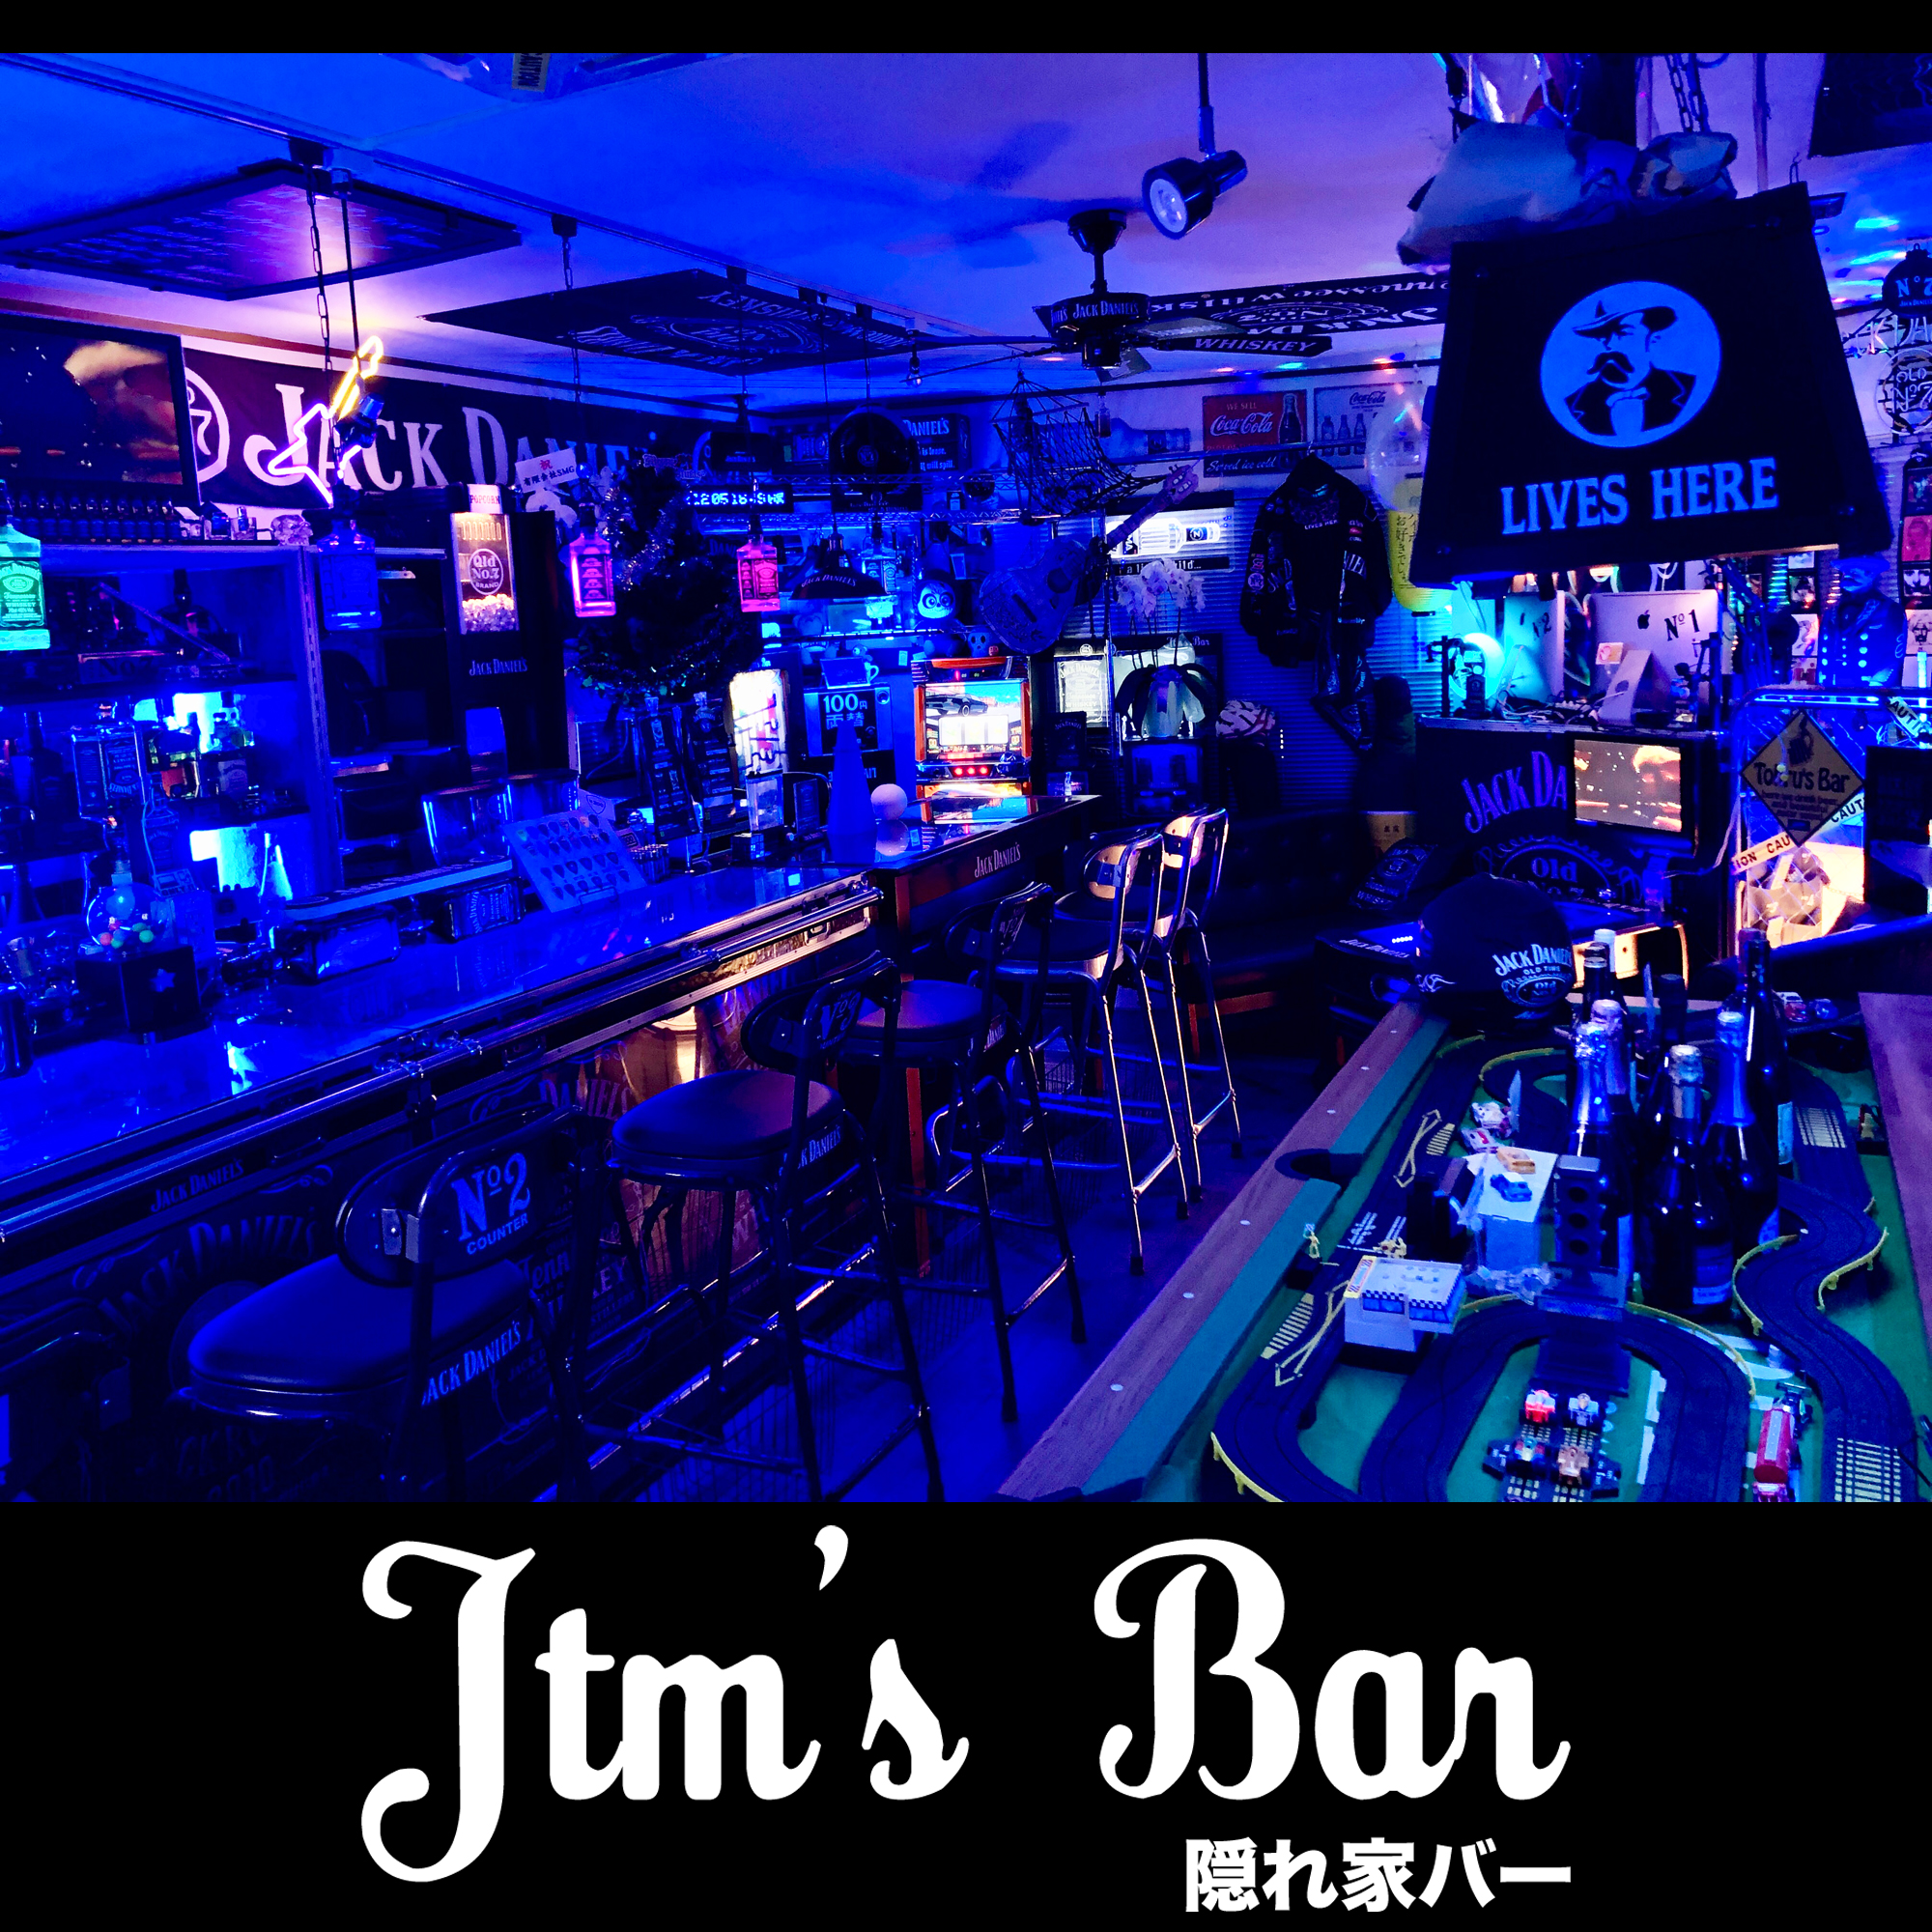 Jtm's Bar